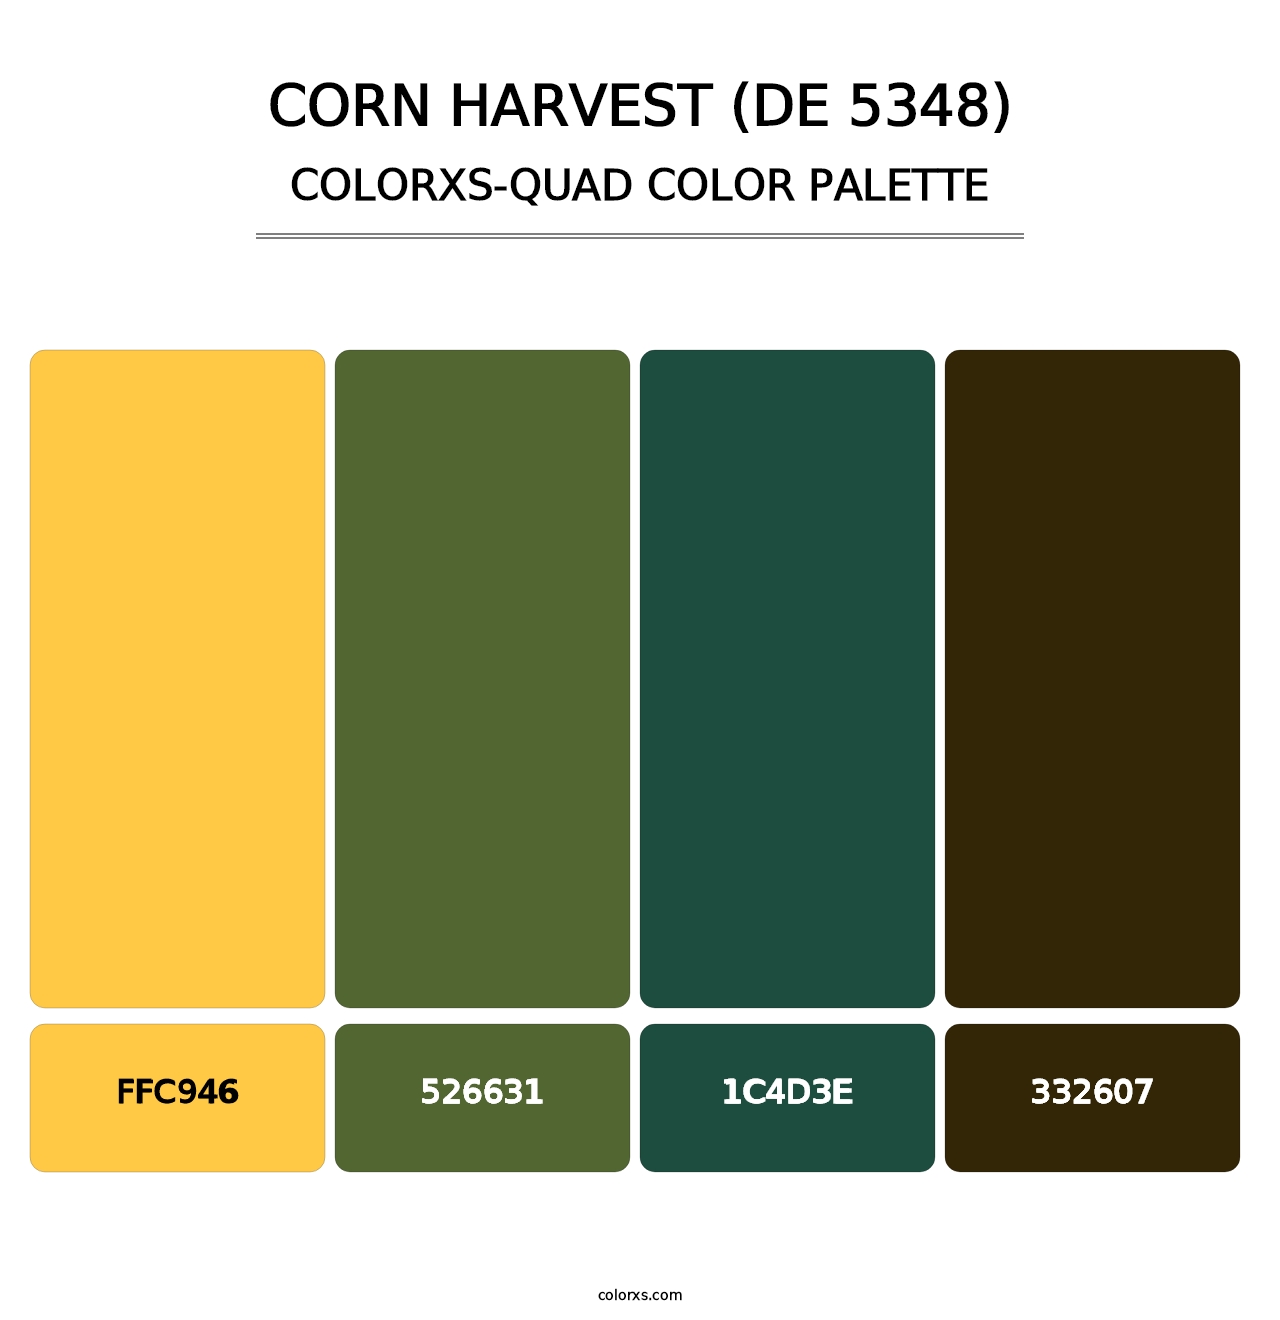 Corn Harvest (DE 5348) - Colorxs Quad Palette